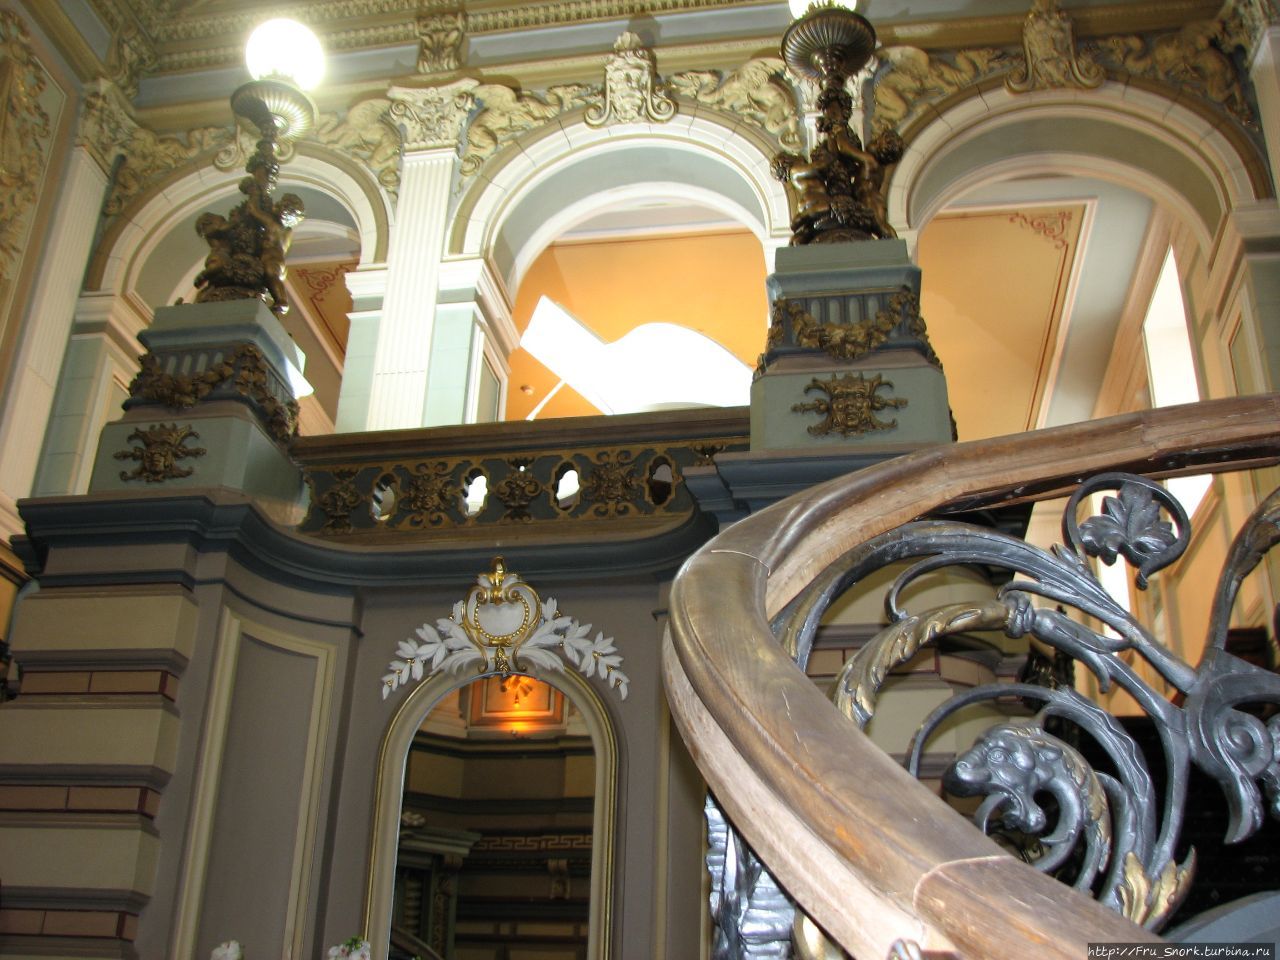 Встречает нас шикарная зала-вестибюль с мраморной лестницей по проекту Льва Кекушева. Москва, Россия